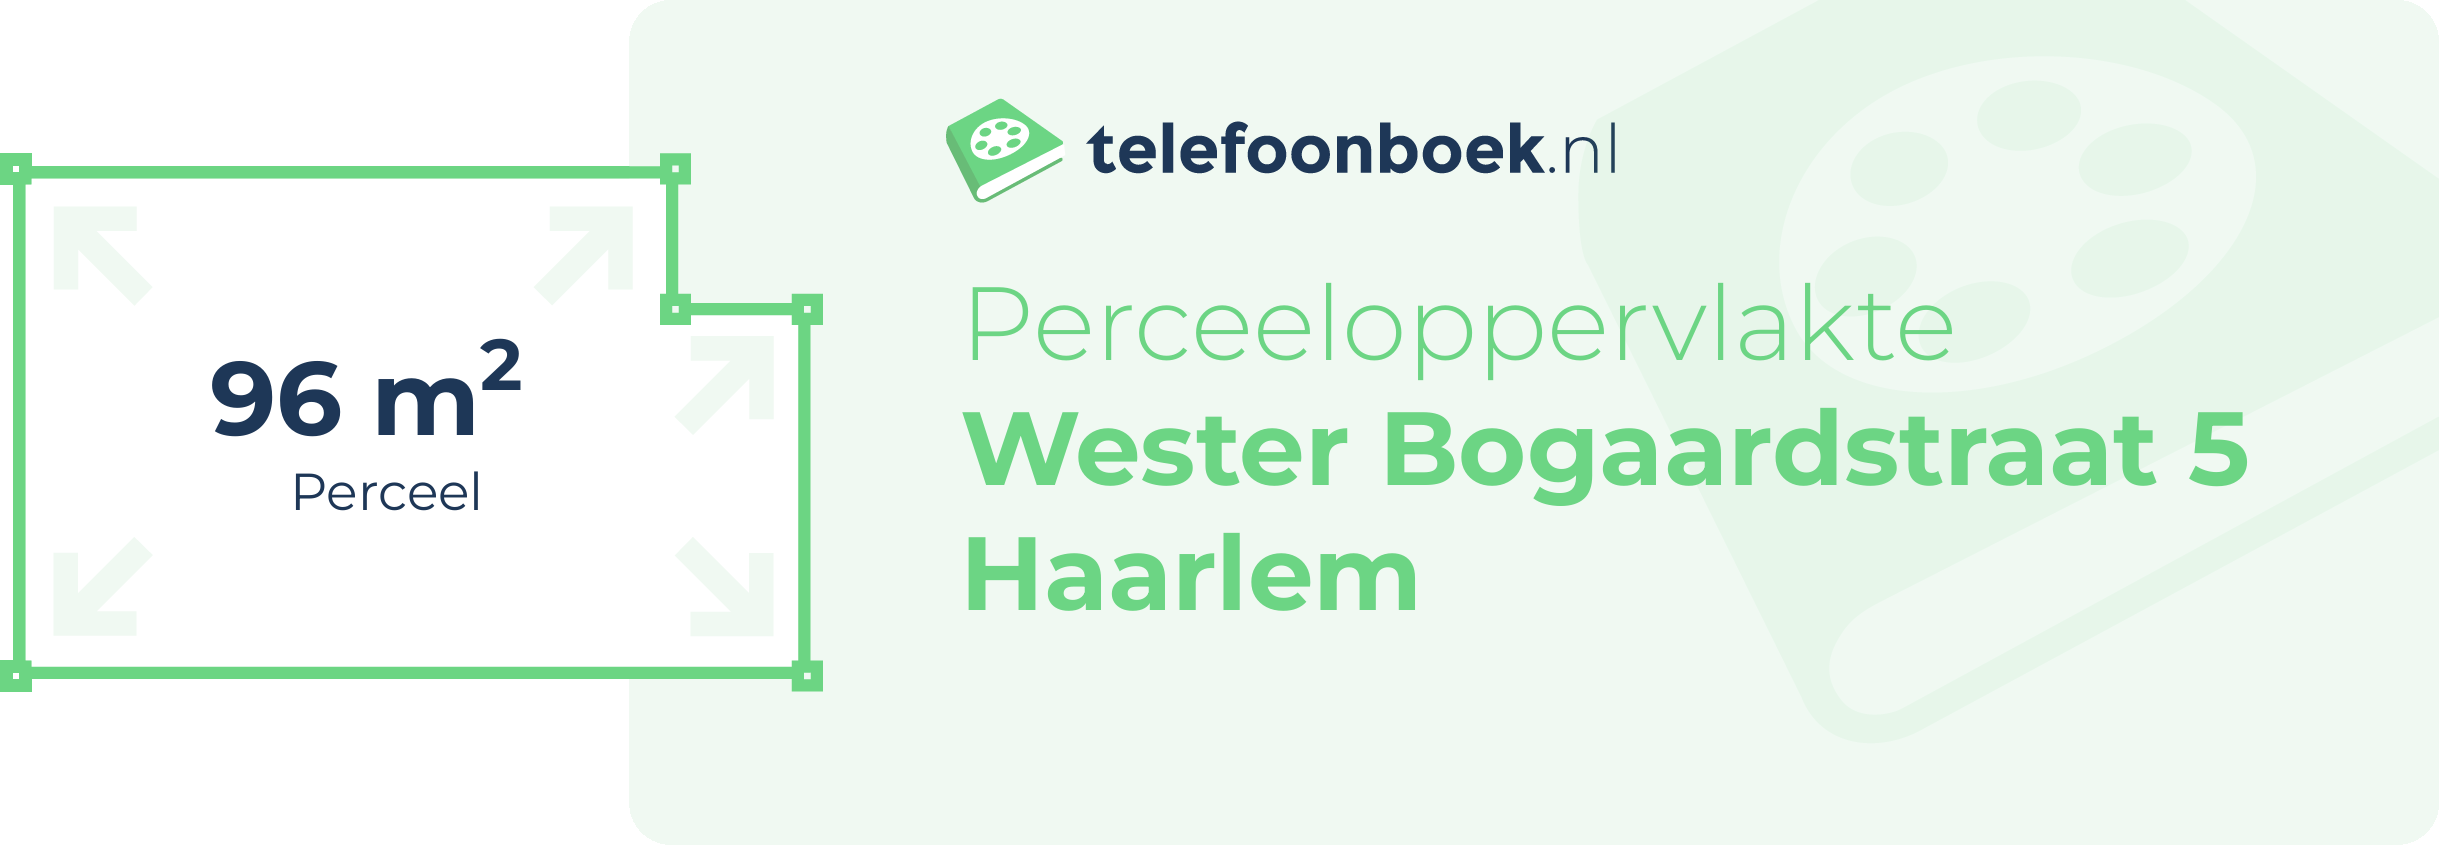 Perceeloppervlakte Wester Bogaardstraat 5 Haarlem